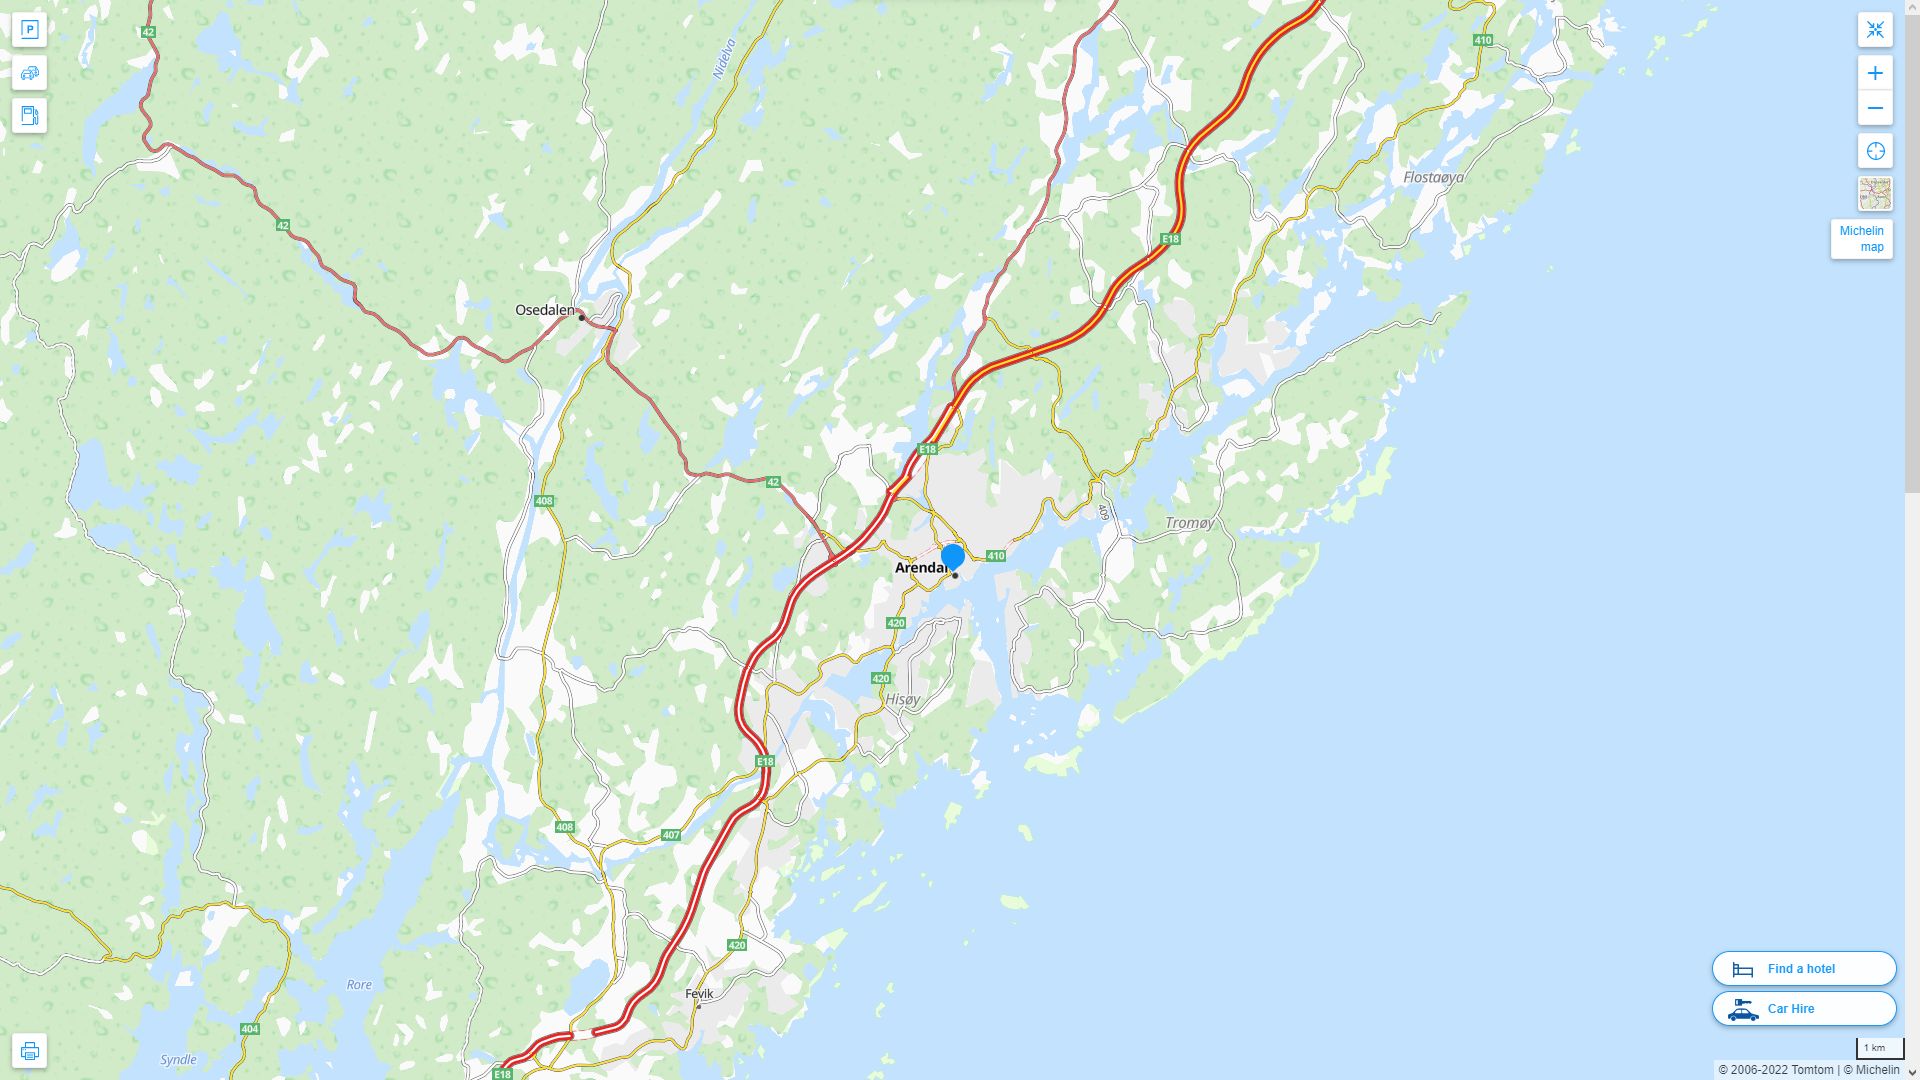 Arendal Norvege Autoroute et carte routiere